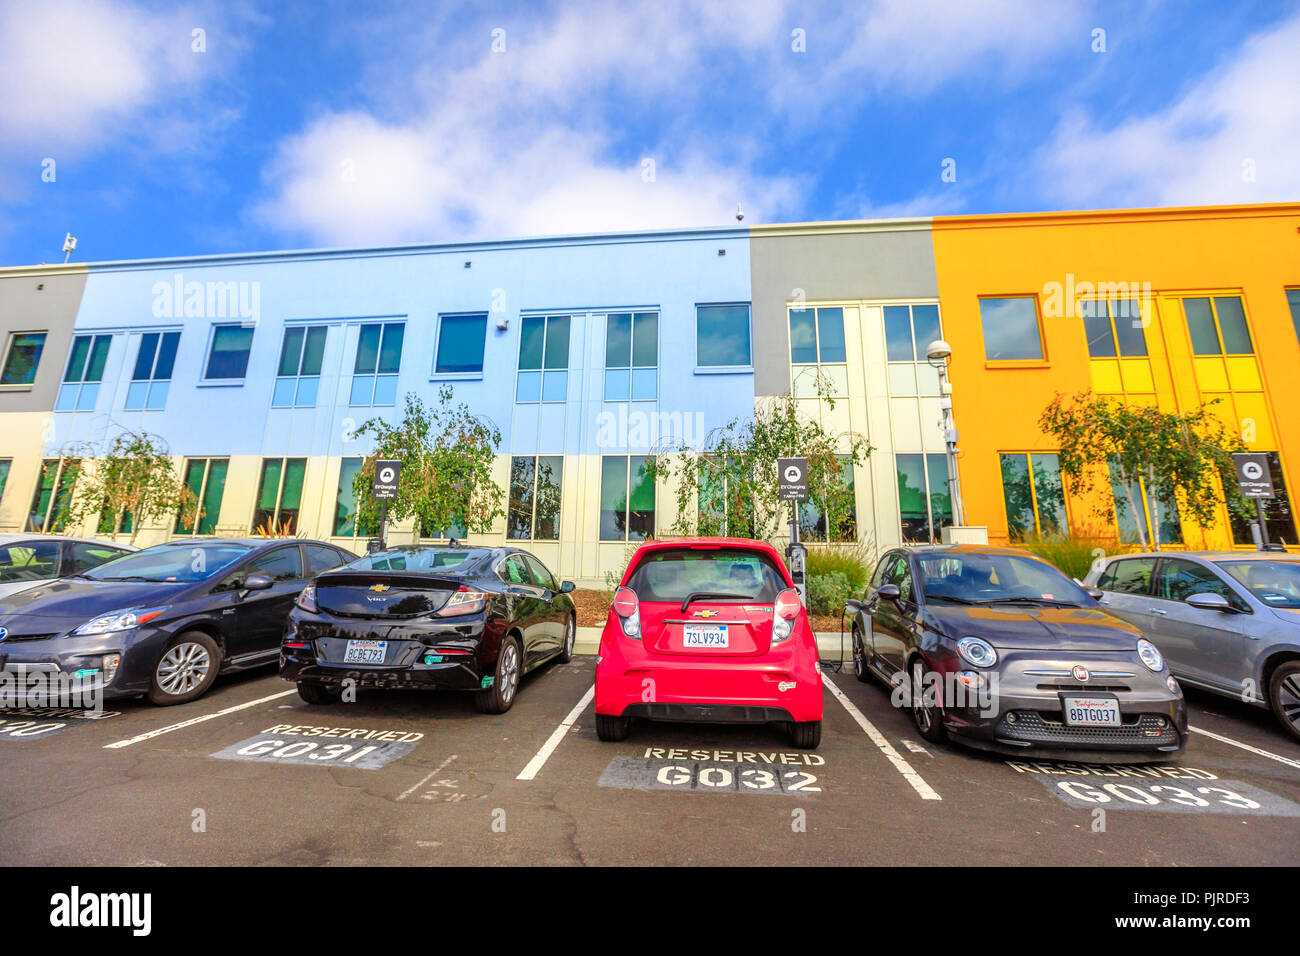 Menlo Park, Kalifornien, USA - 13. August 2018: Nummerierte Sitzplätze für Mitarbeiter vor dem bunten Gebäude von Facebook Headquarters Campus in Silicon Valley, San Francisco Bay Area. Stockfoto